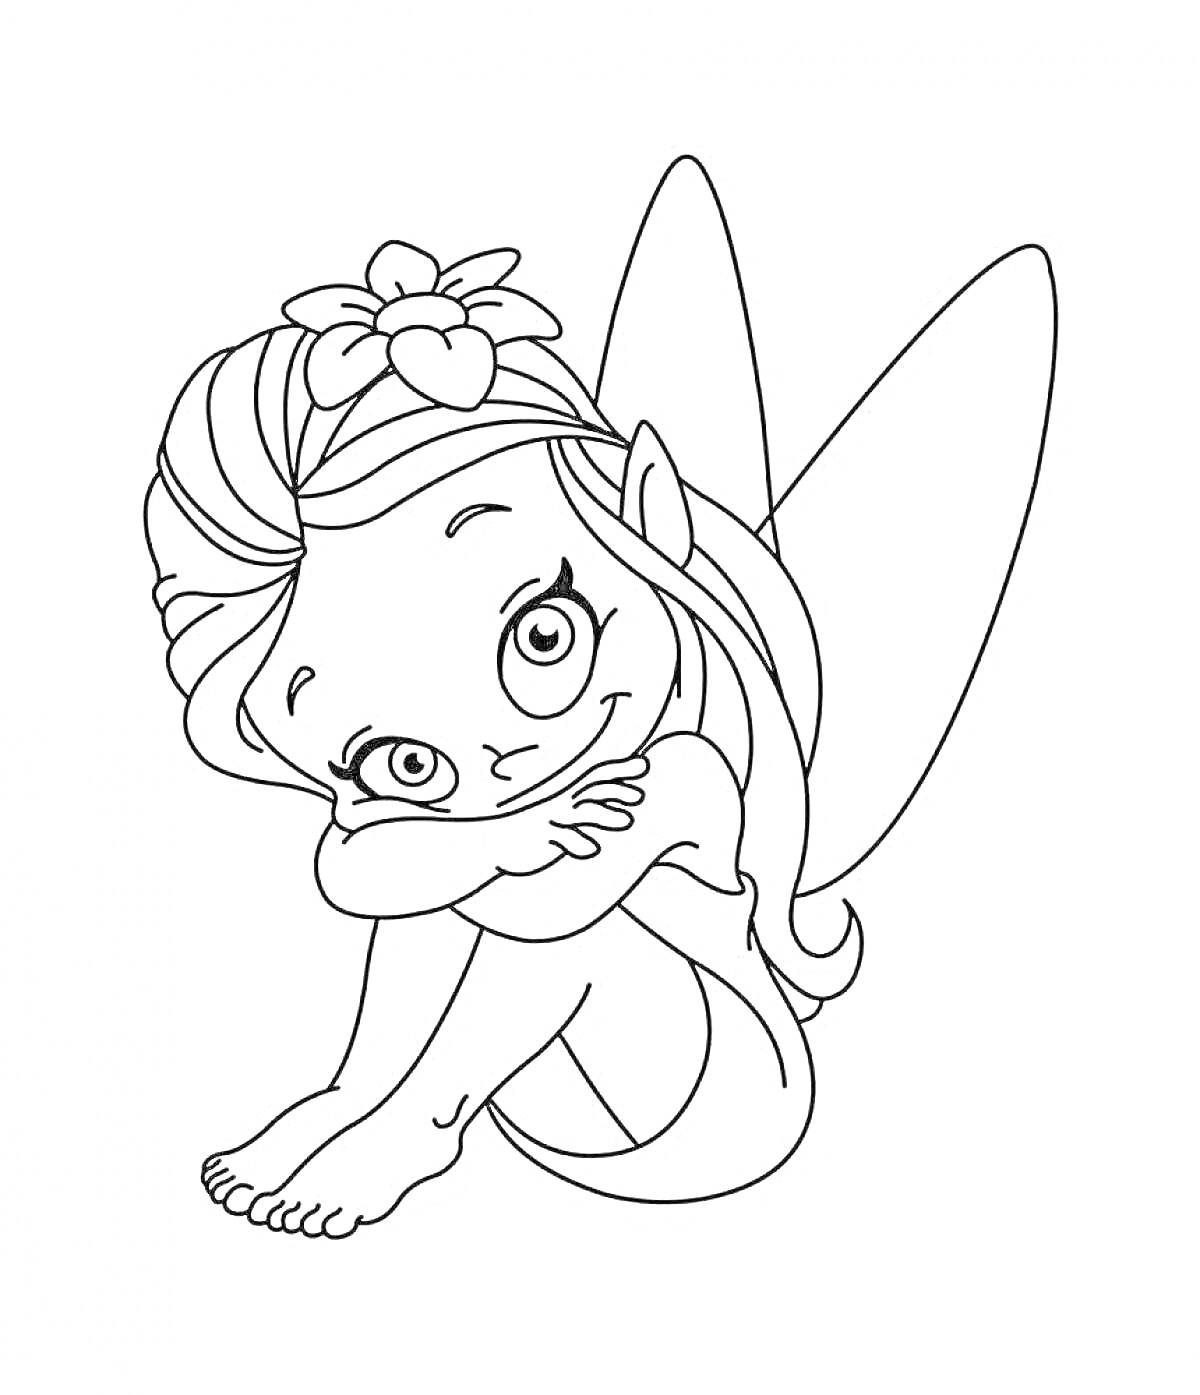 Раскраска Маленькая фея сидит с прижатыми к коленям руками, волосы с цветком, крылья